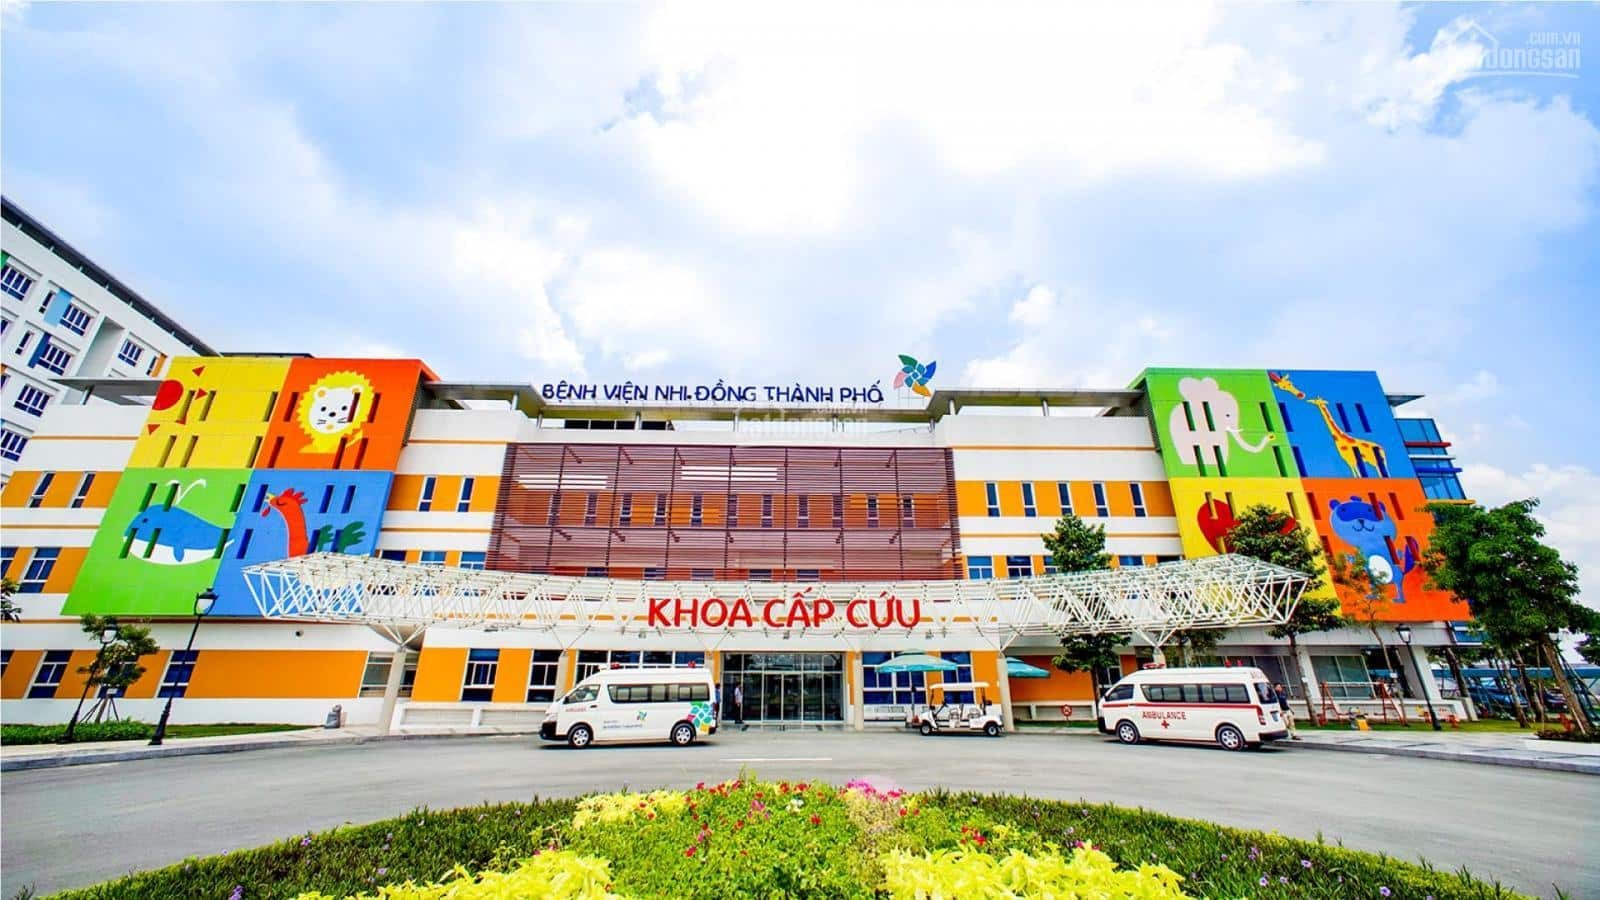  bệnh viện Nhi Đồng Thành Phố đã có được nền tảng phát triển vững chắc và ngày càng nhận được sự tin tưởng của bệnh nhân